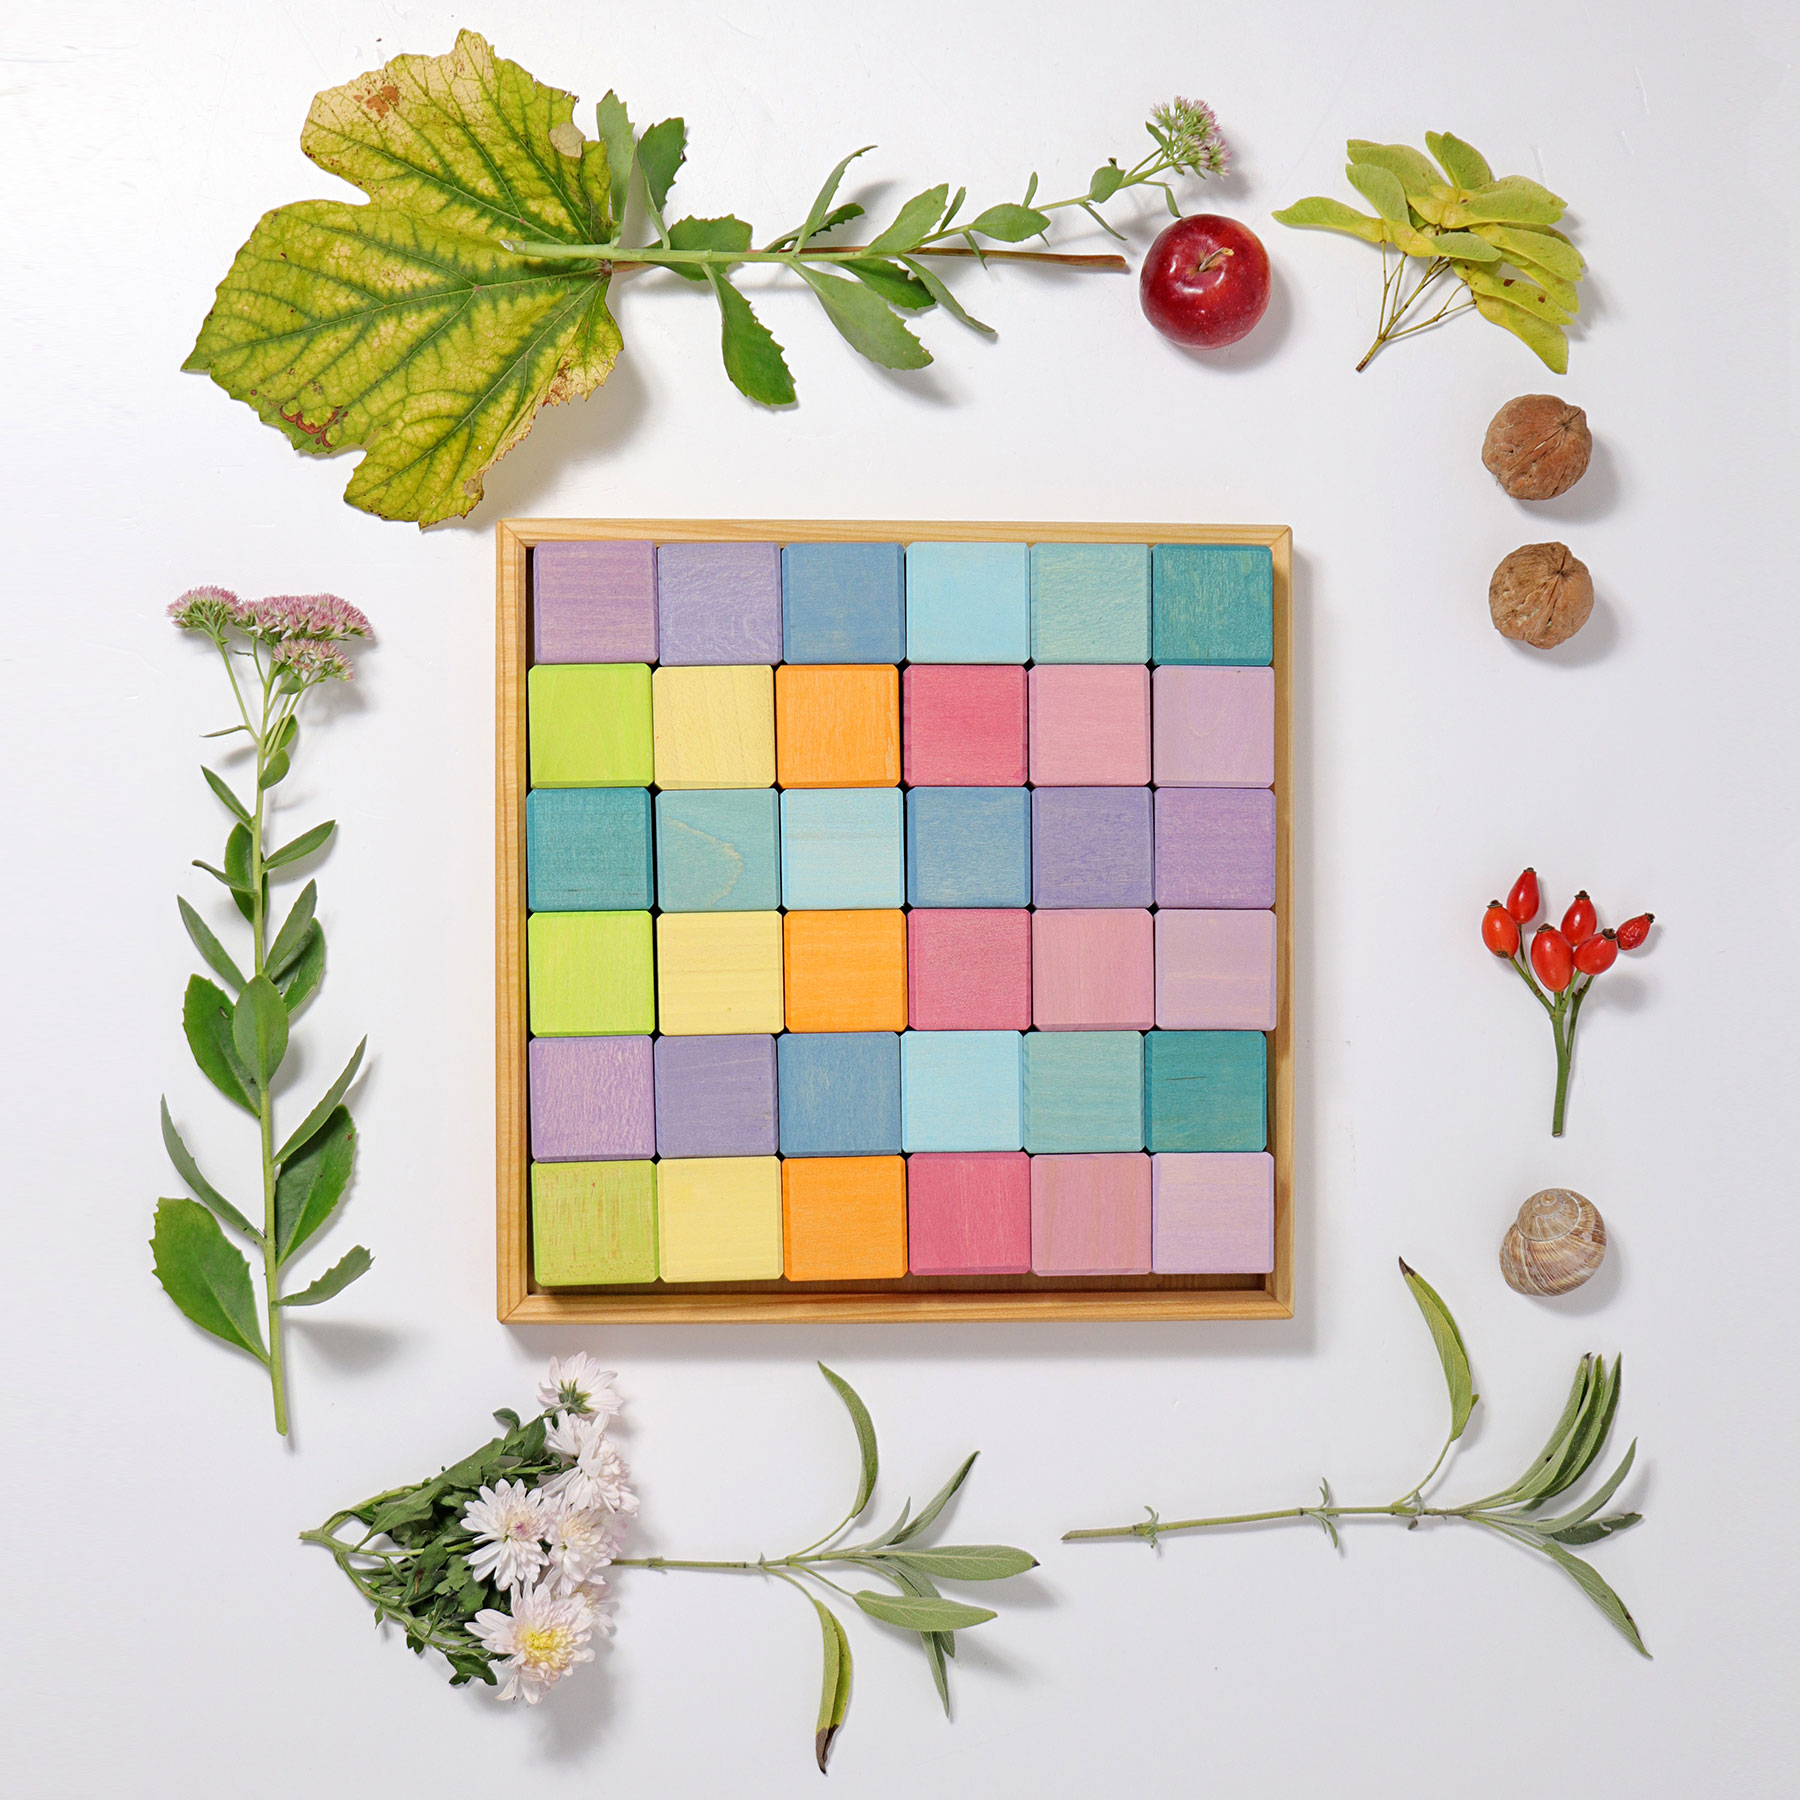 Grimm's - Set de cubes en bois Mosaïque, couleurs pastel